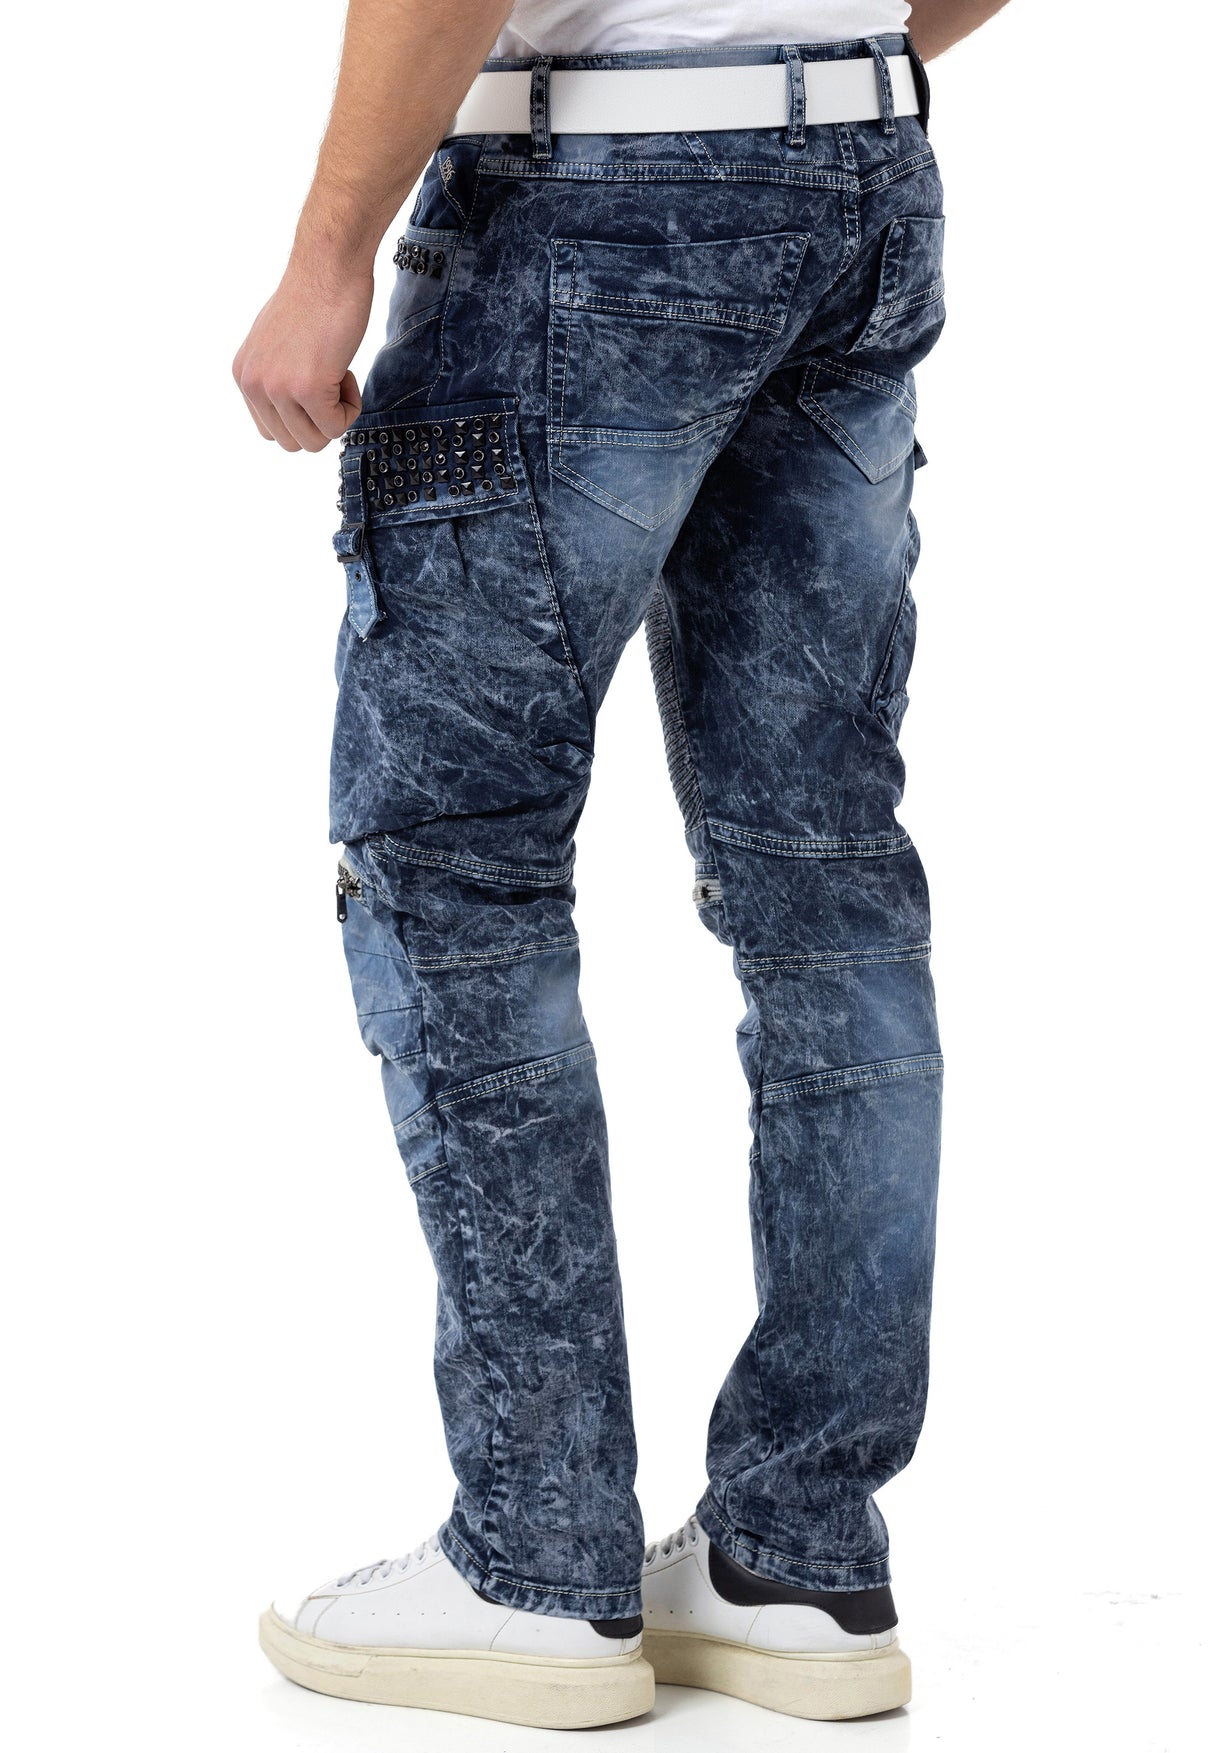 CD494 Jeans cómodos para hombres con bolsas de piedras preciosas en ajuste regular